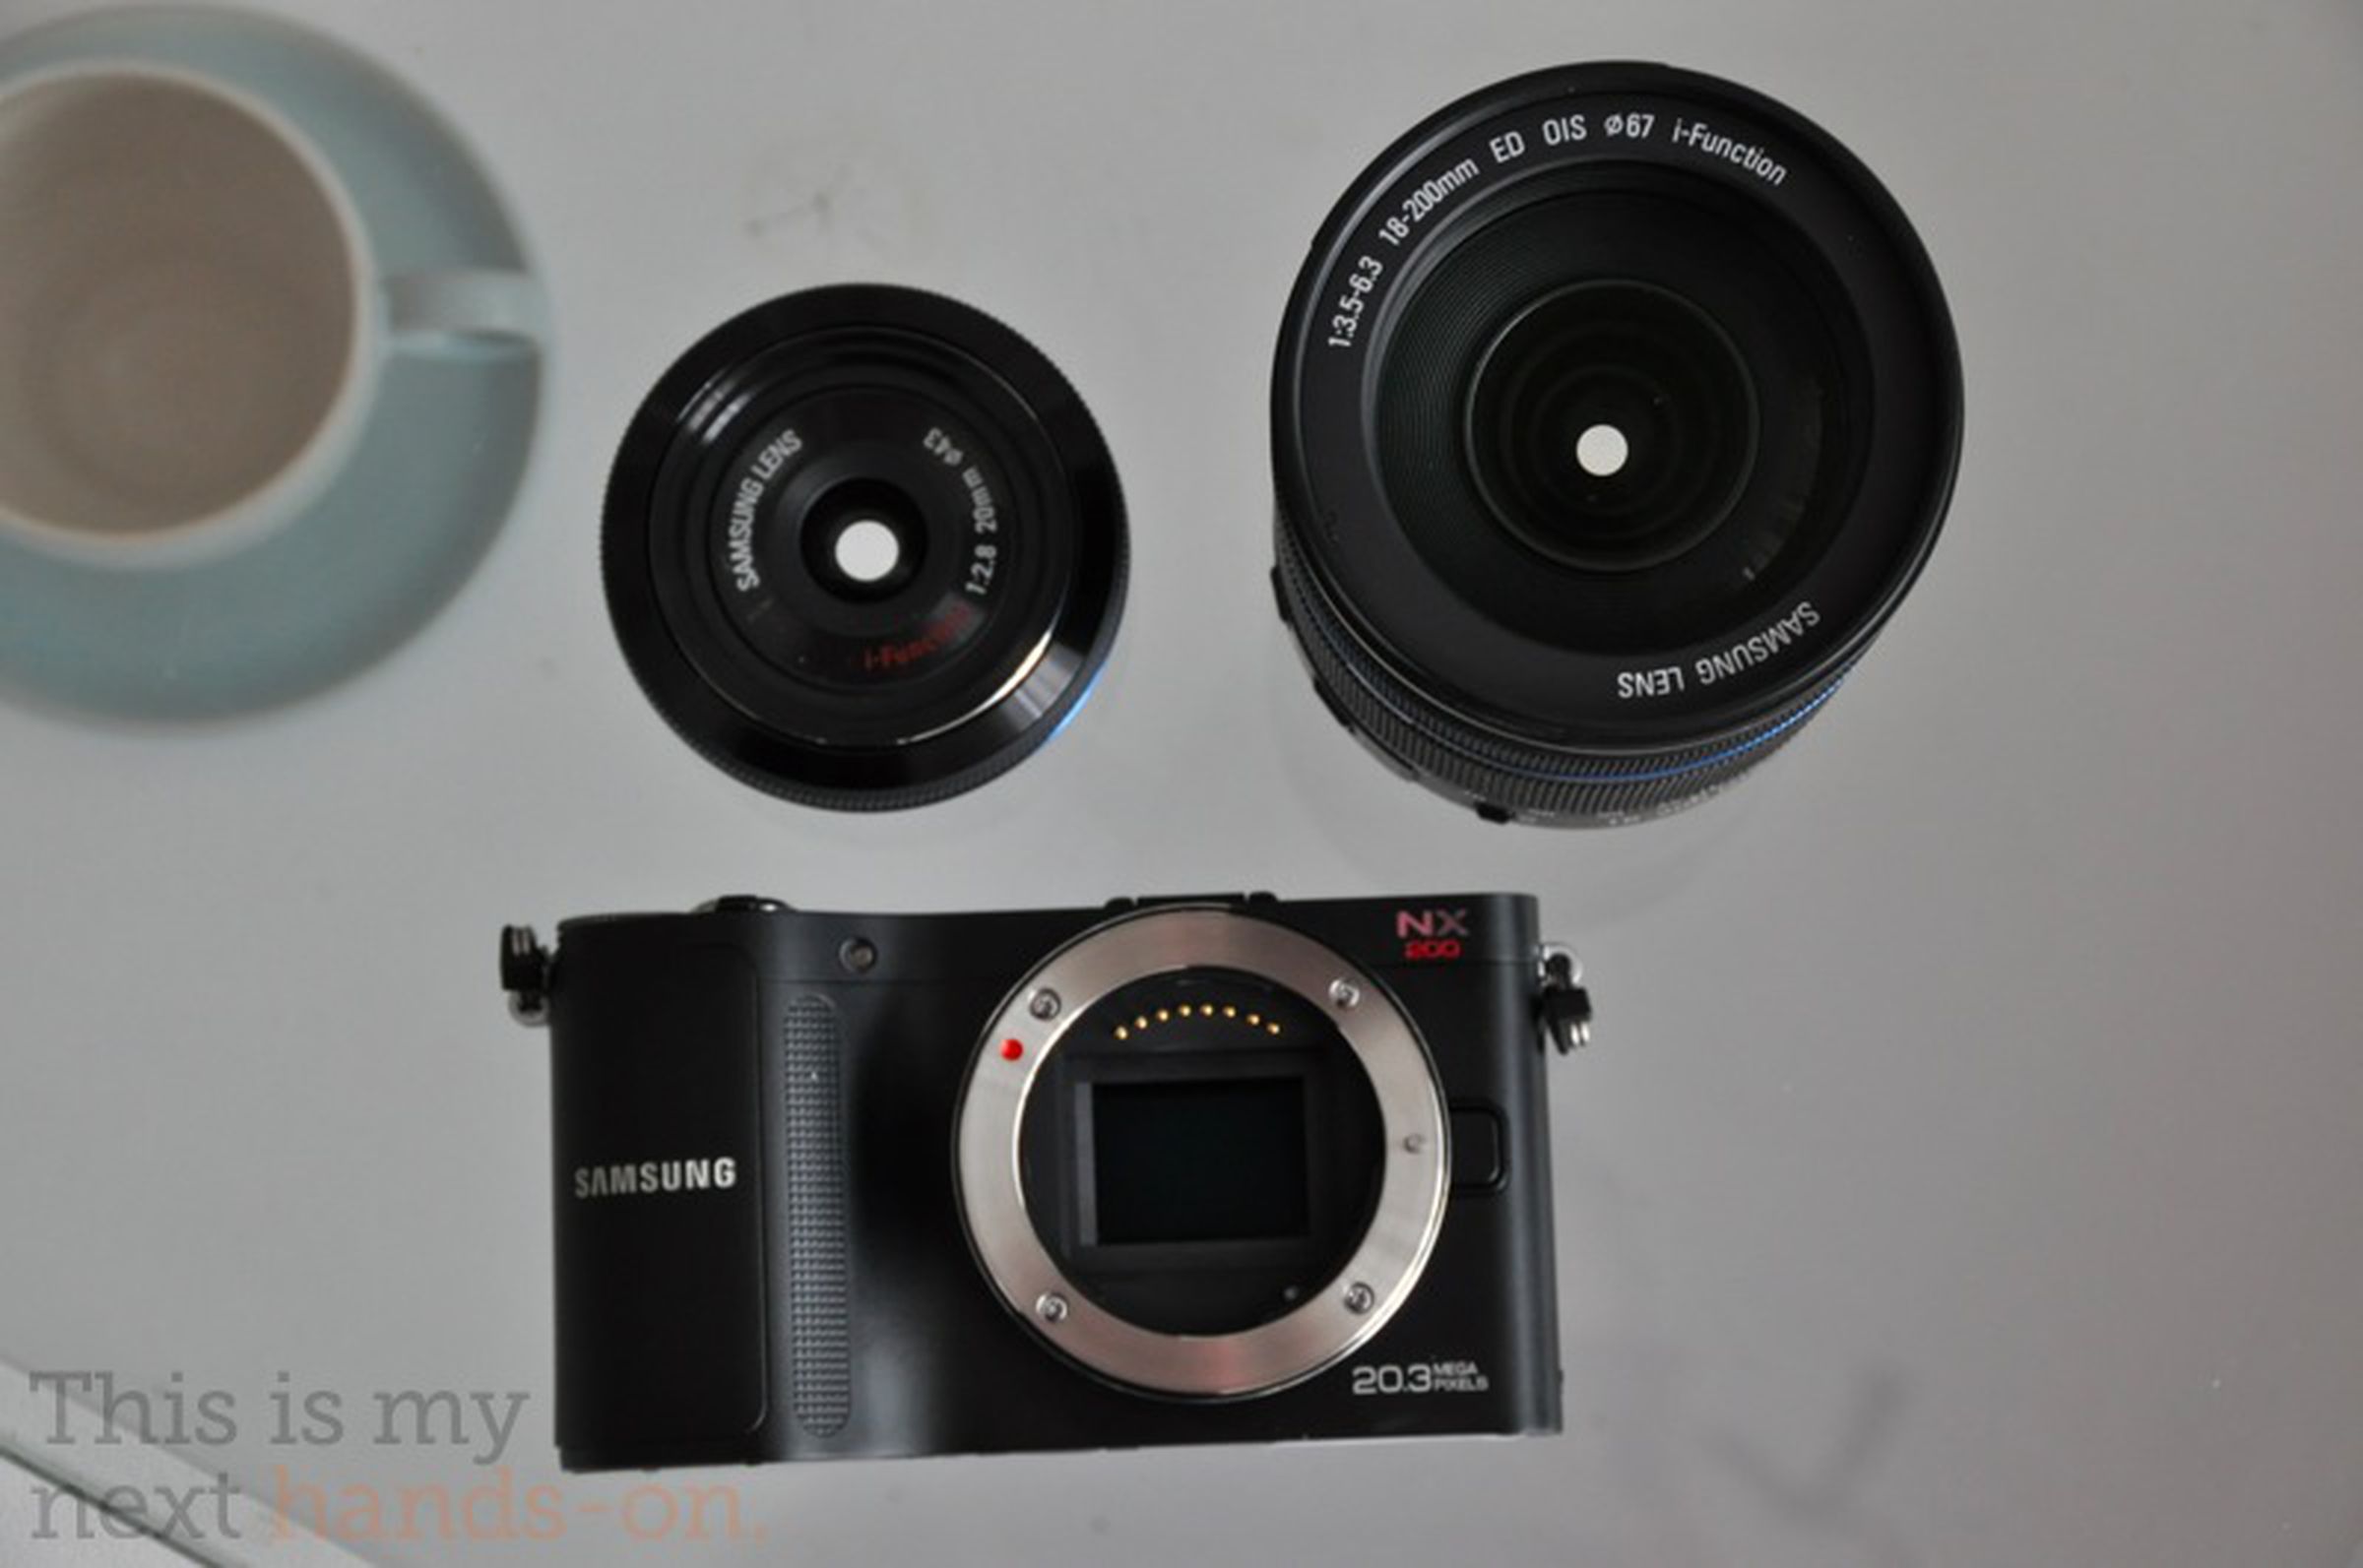 Samsung NX200 hands-on photos